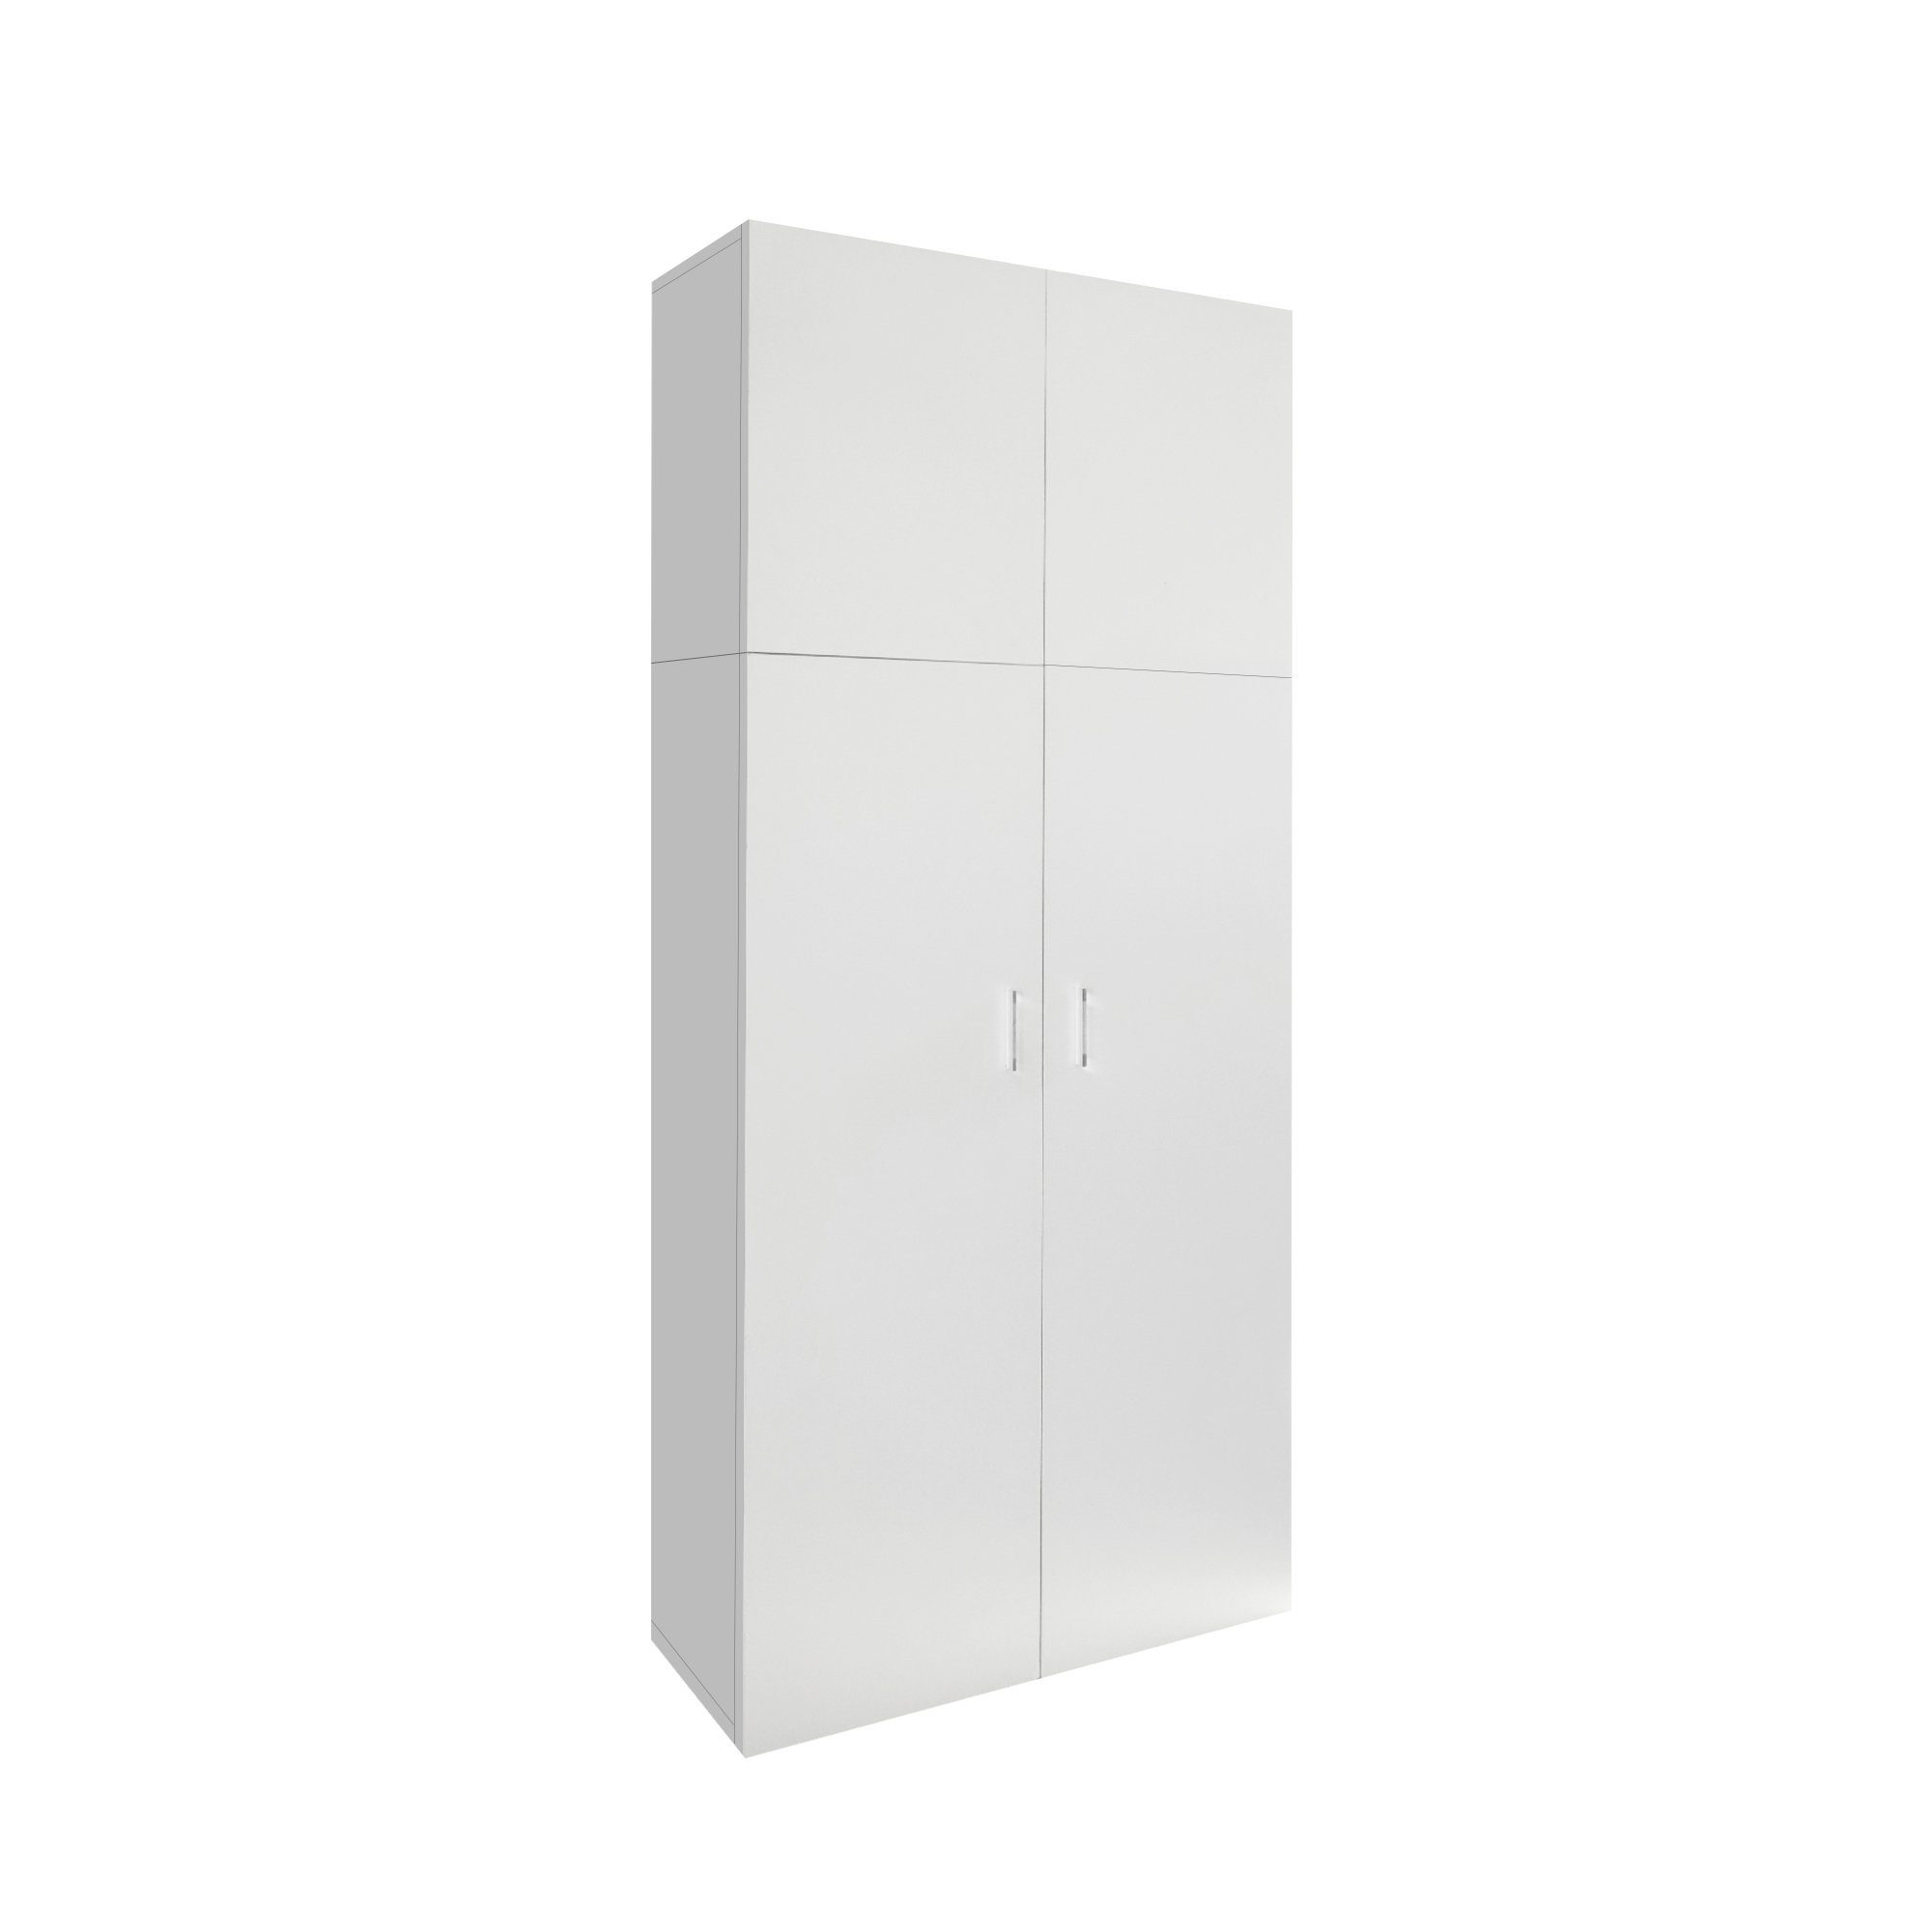 ML-DESIGN Mehrzweckschrank Mehrzweckschrank Büroschrank Haushaltsschrank Weiß 2 Türen 5 Fächer Holz 80x182,4x37cm modern